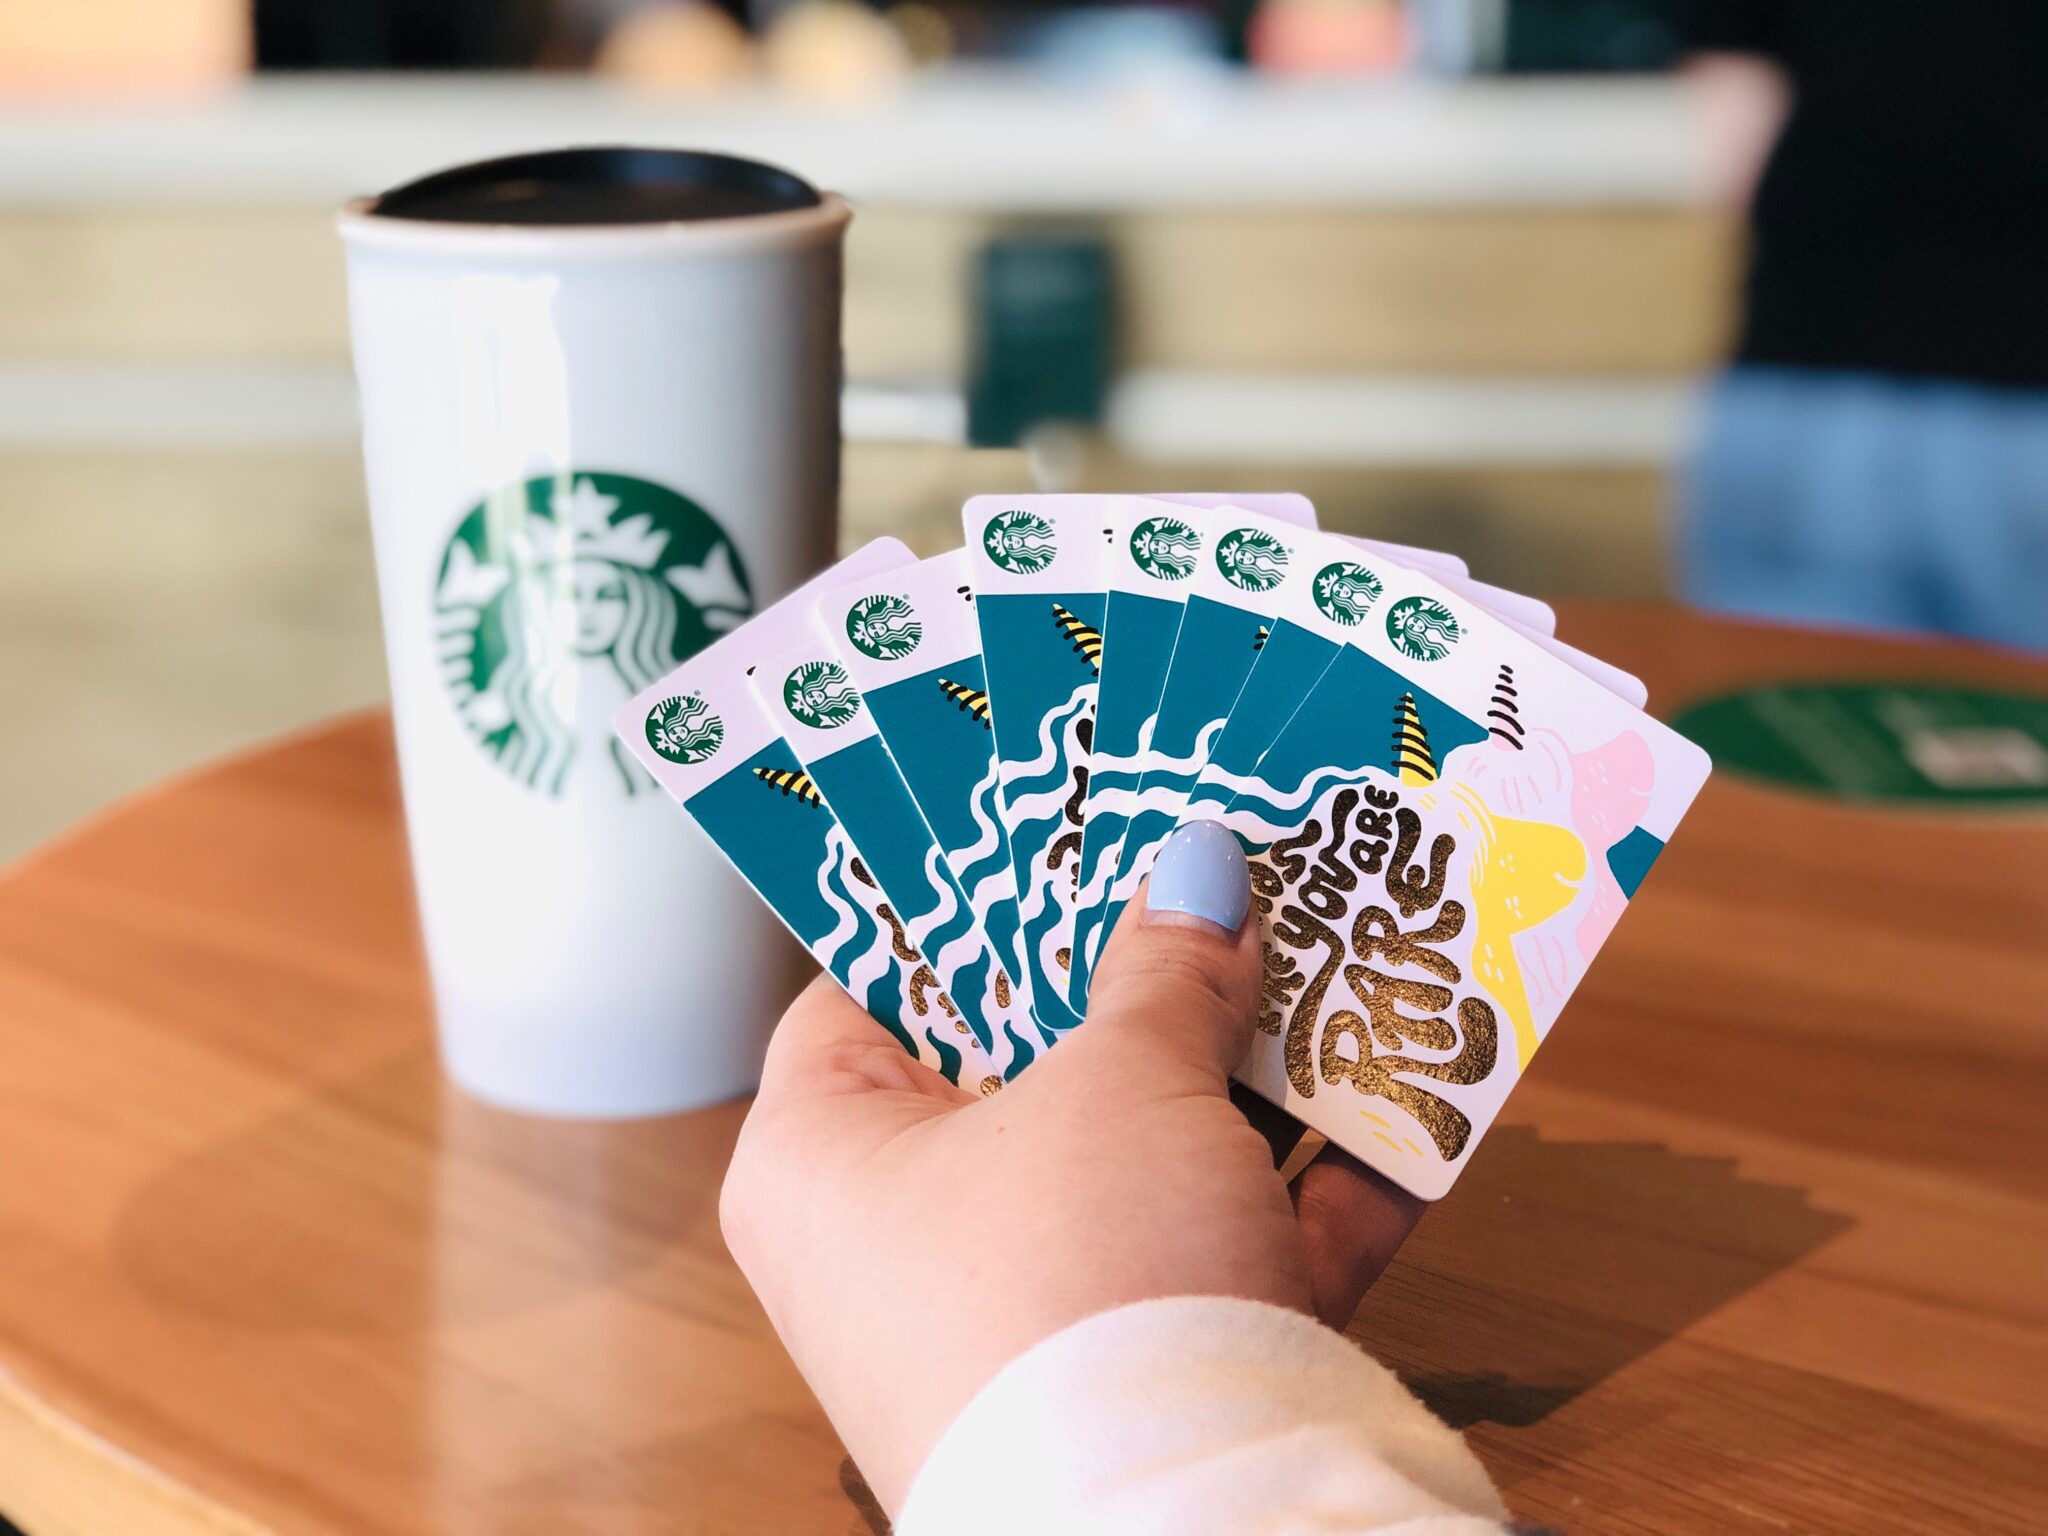 Envoi de Starbucks Joy : un guide pour l'envoi de cartes-cadeaux par SMS